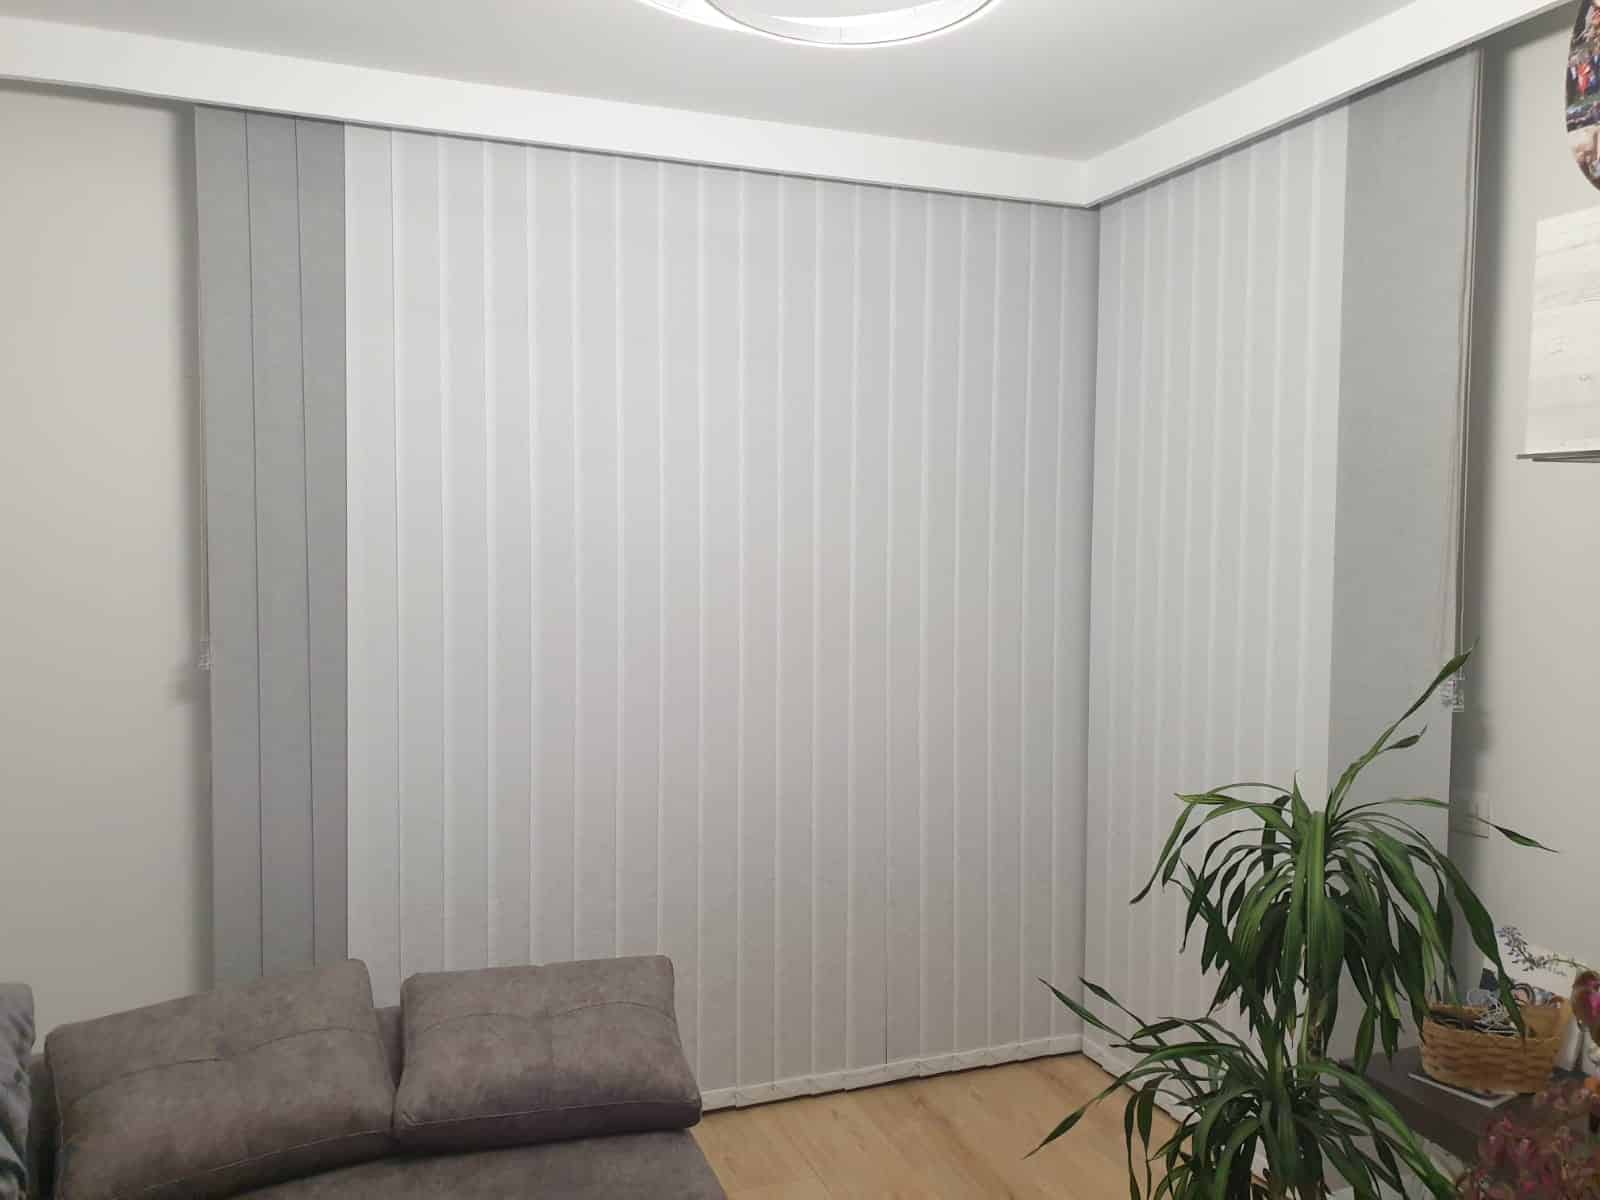 Cortina Vertical Decorativa Traslúcida salon completo